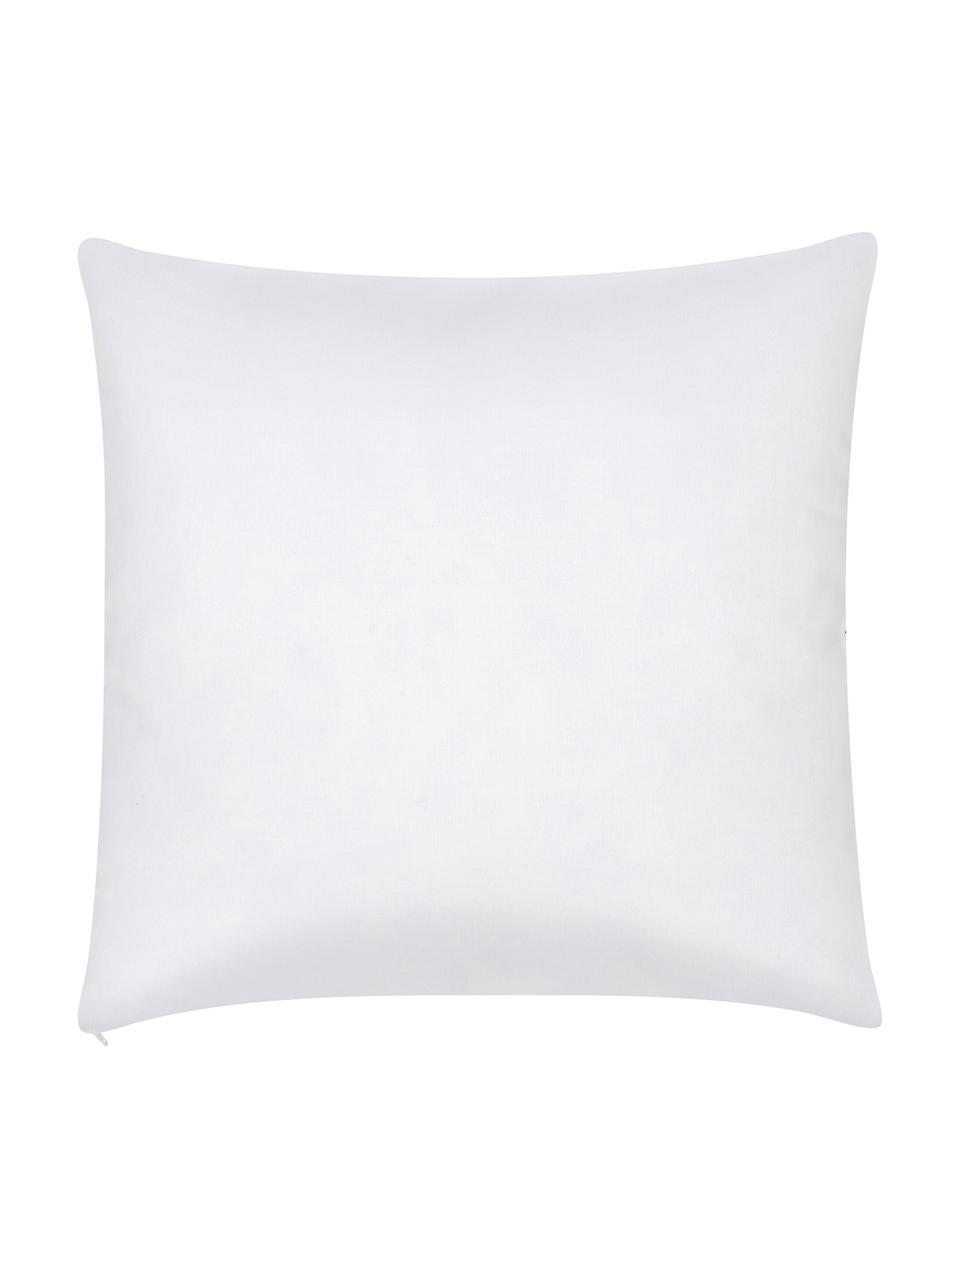 Poszewka na poduszkę Ola, 100% bawełna, Czarny, biały, S 40 x D 40 cm